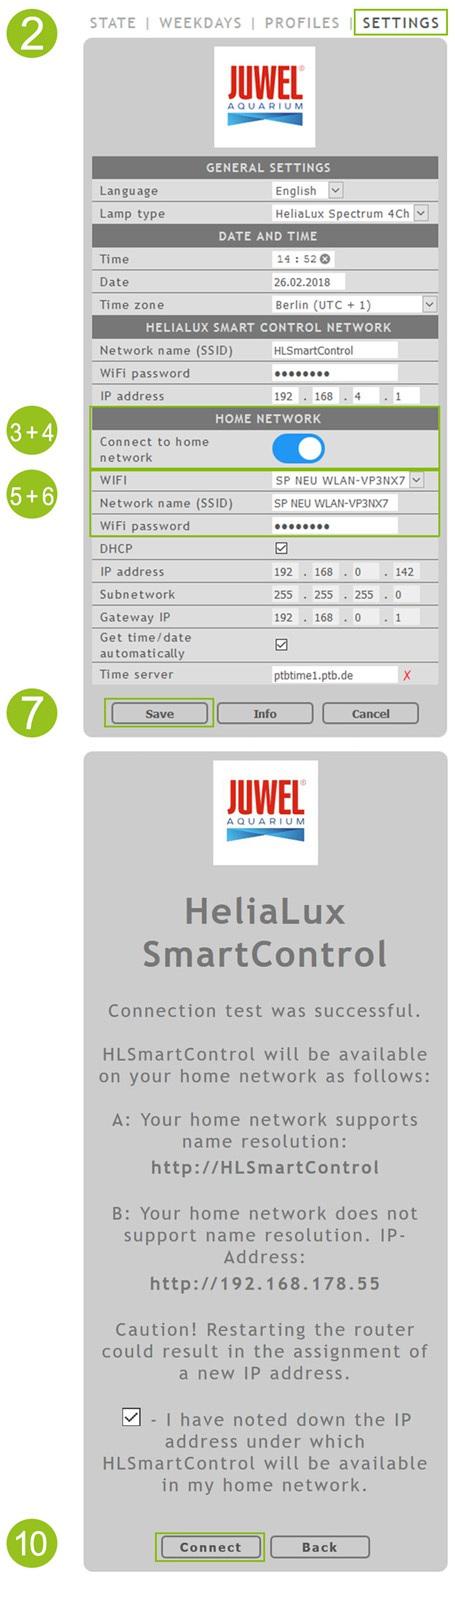 HeliaLux SmartControl nella rete domestica Per raggiungere comodamente l'helialux SmartControl, si può connettere l apparecchio con la rete domestica.